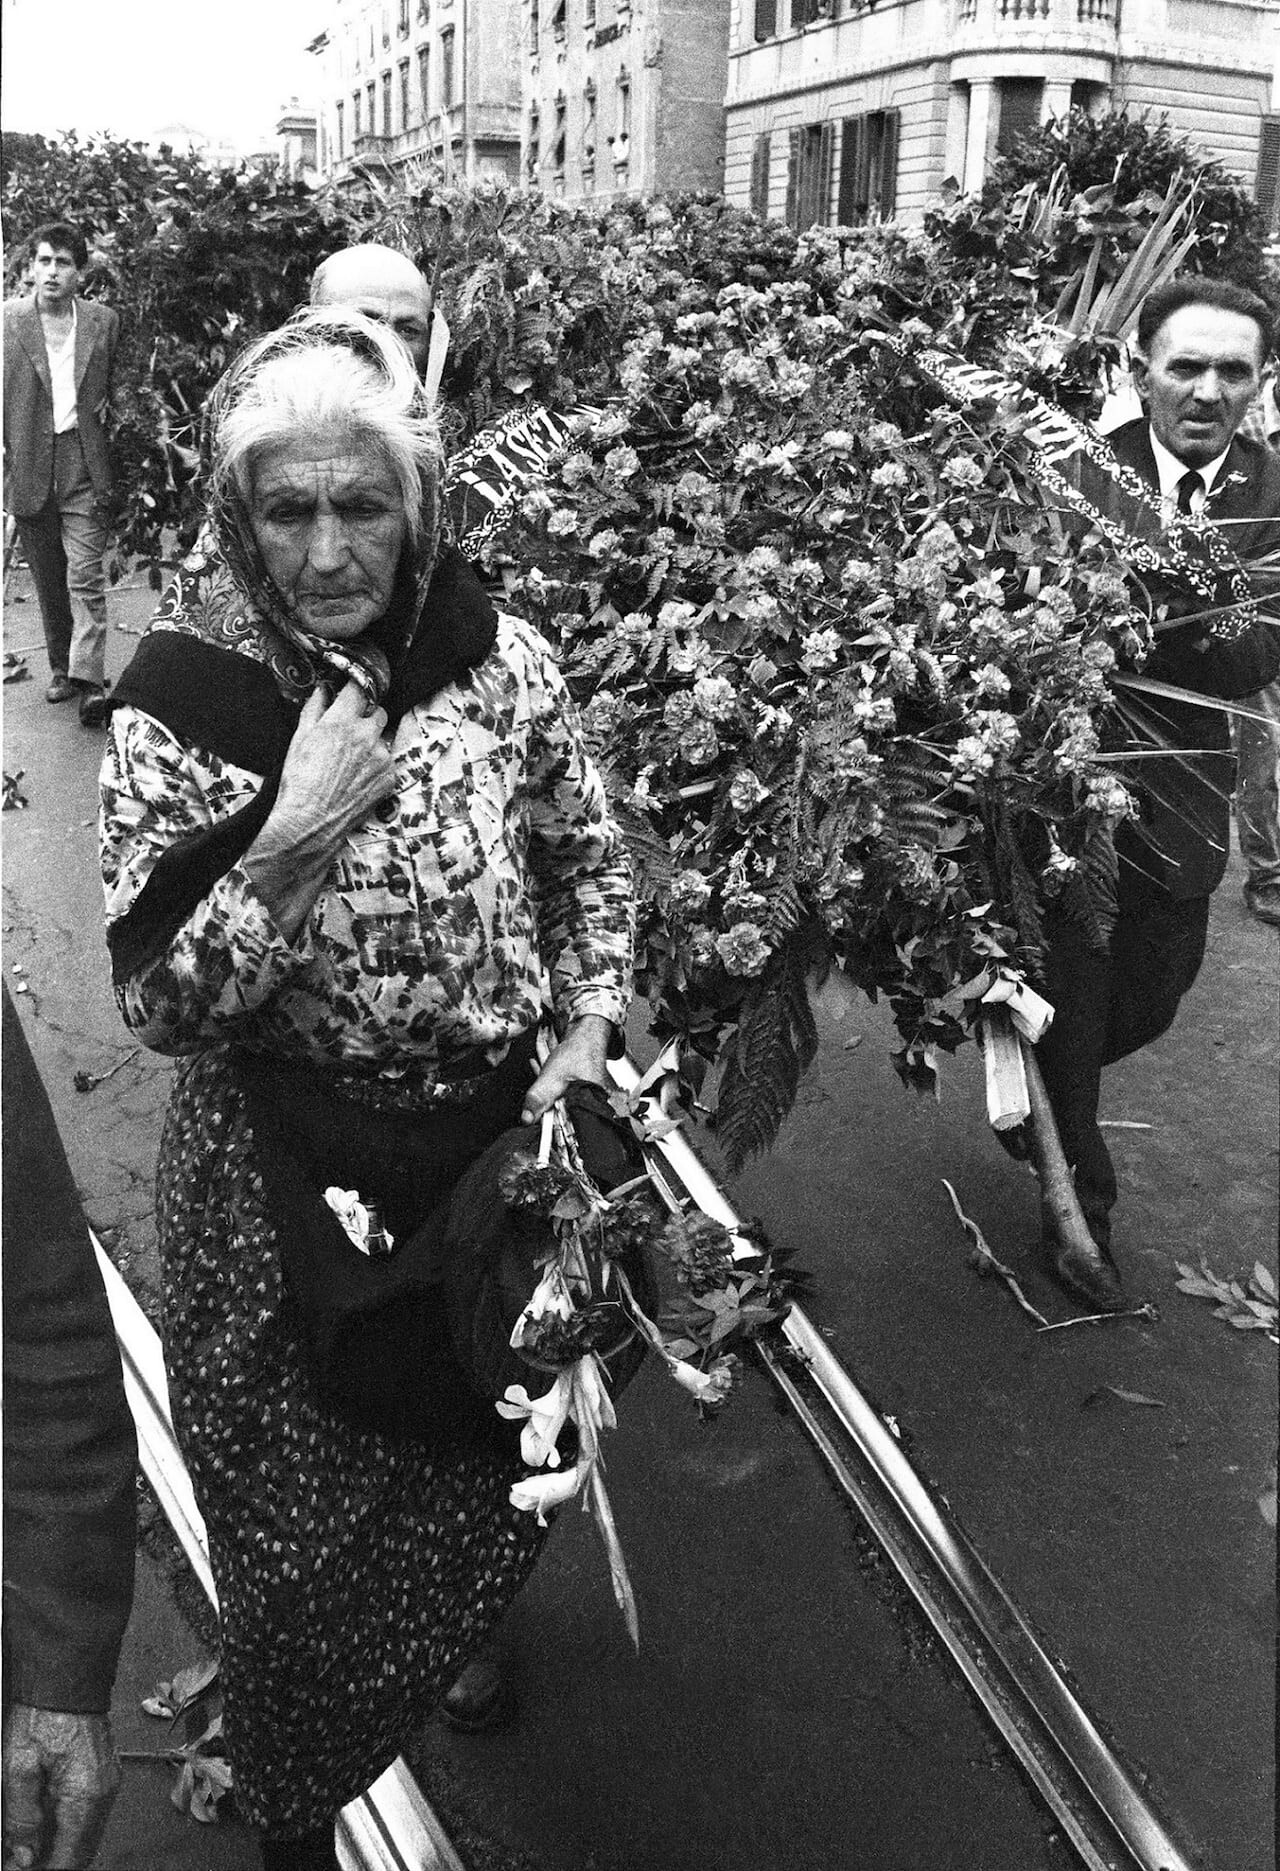 Похороны Пальмиро Тольятти, Рим, 25 августа 1964 года. Фотограф Паоло Ди Паоло